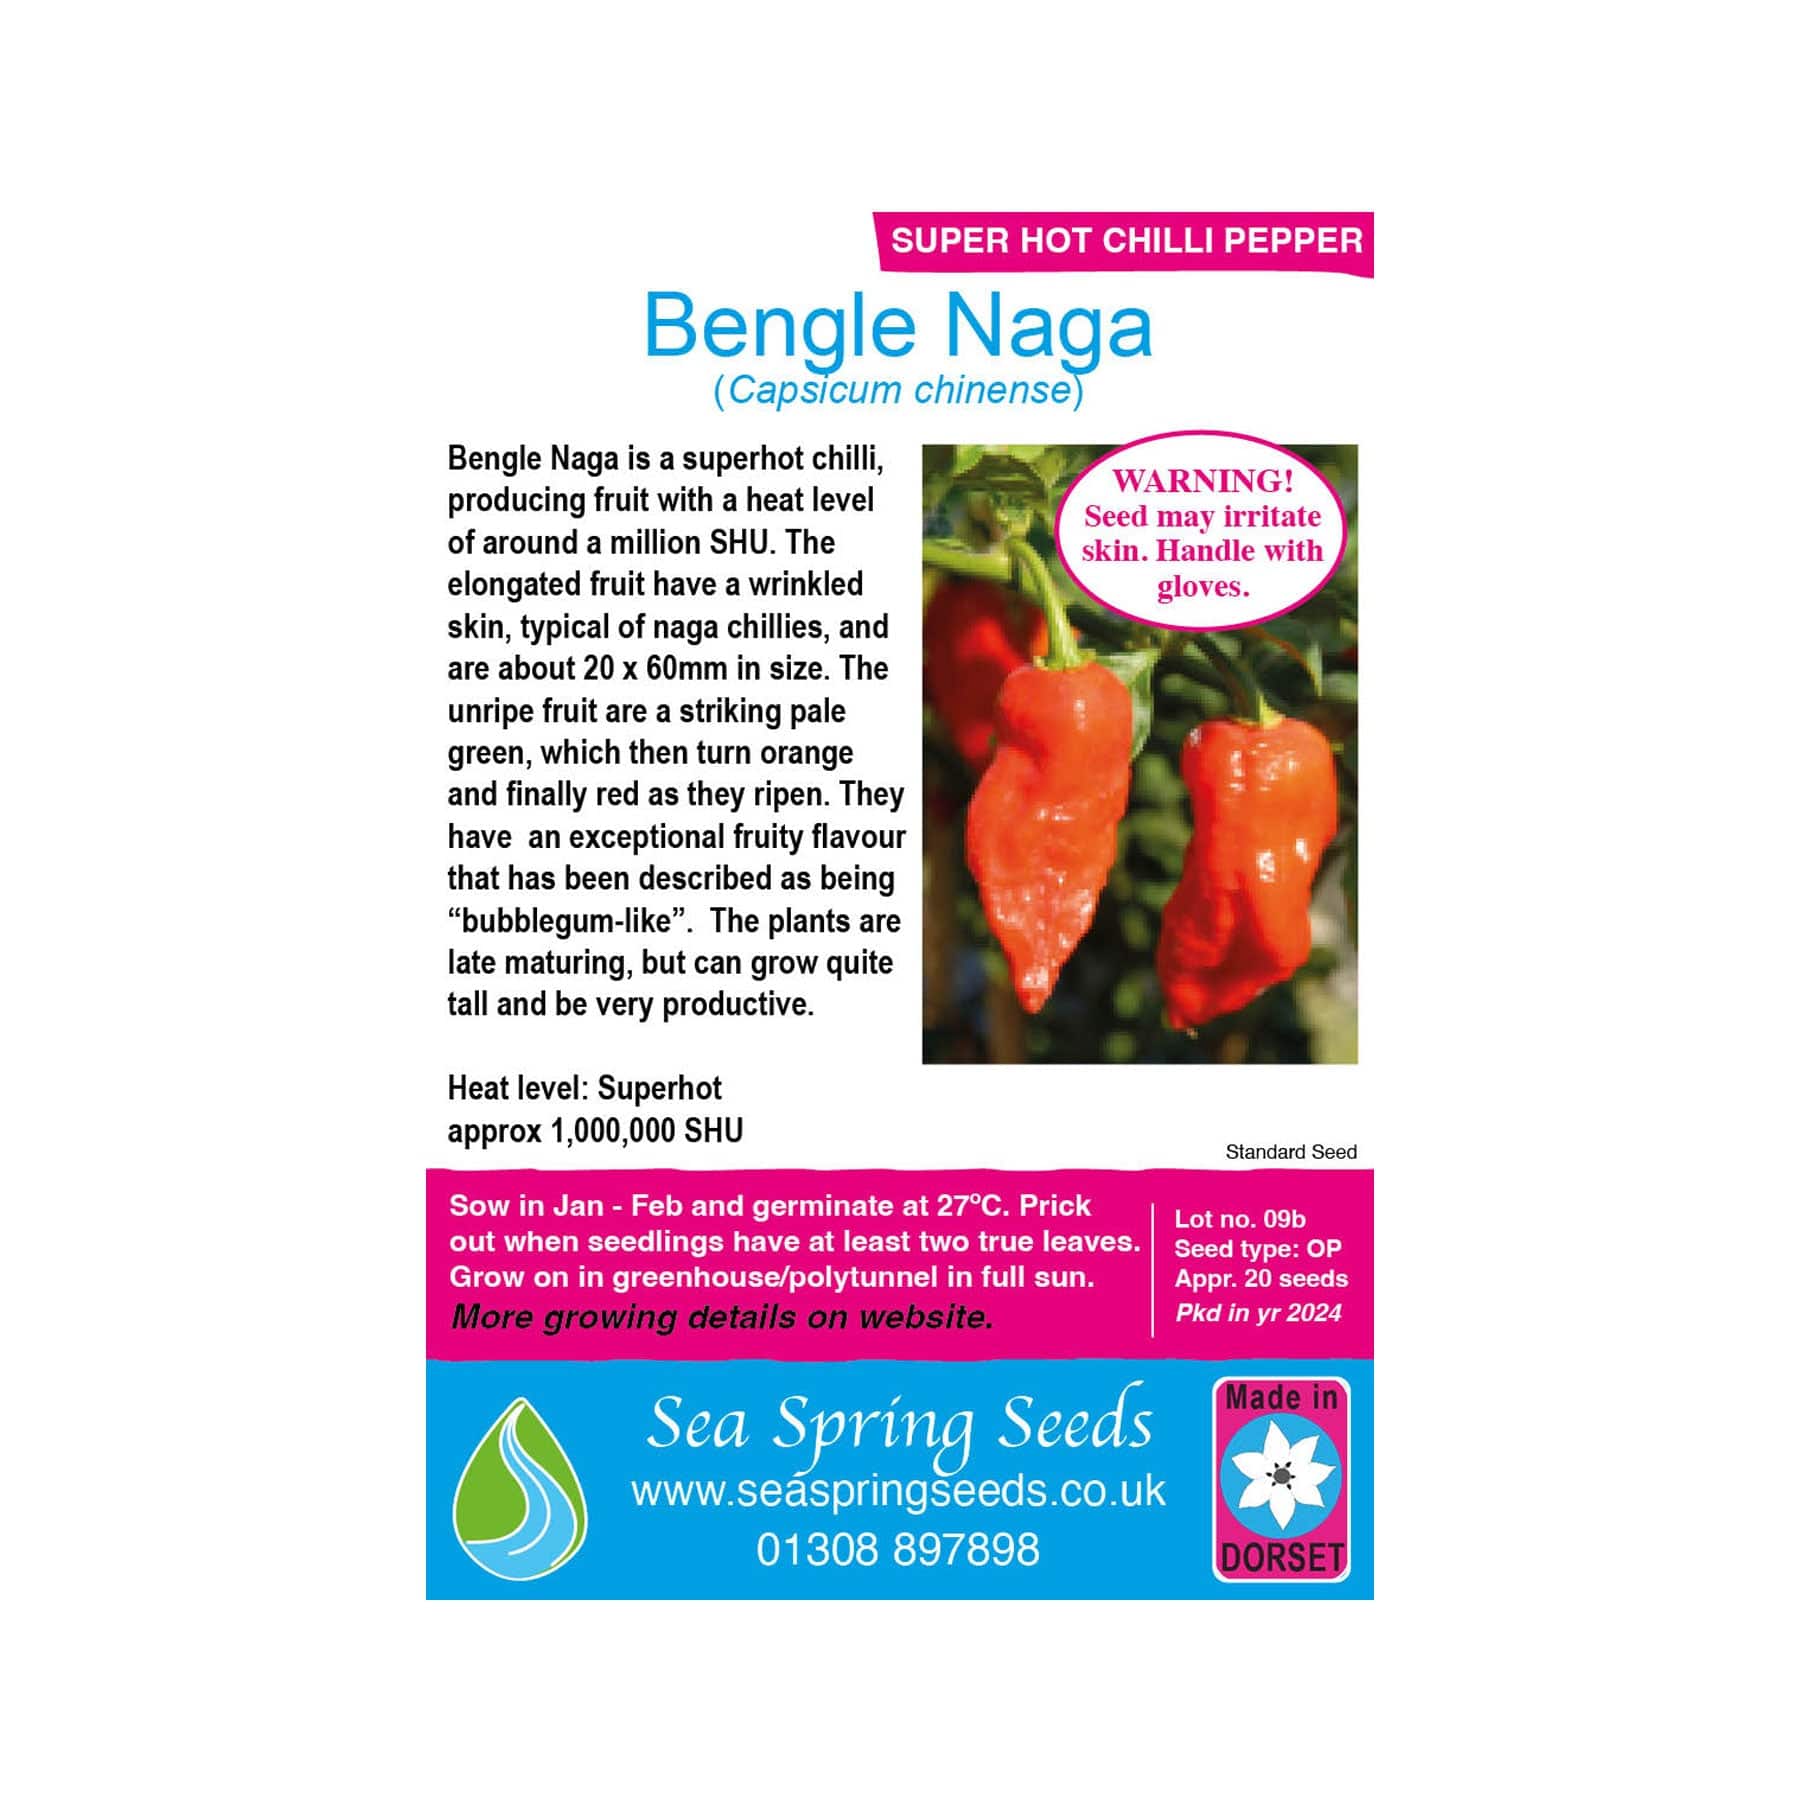 Bengle naga chilli seeds